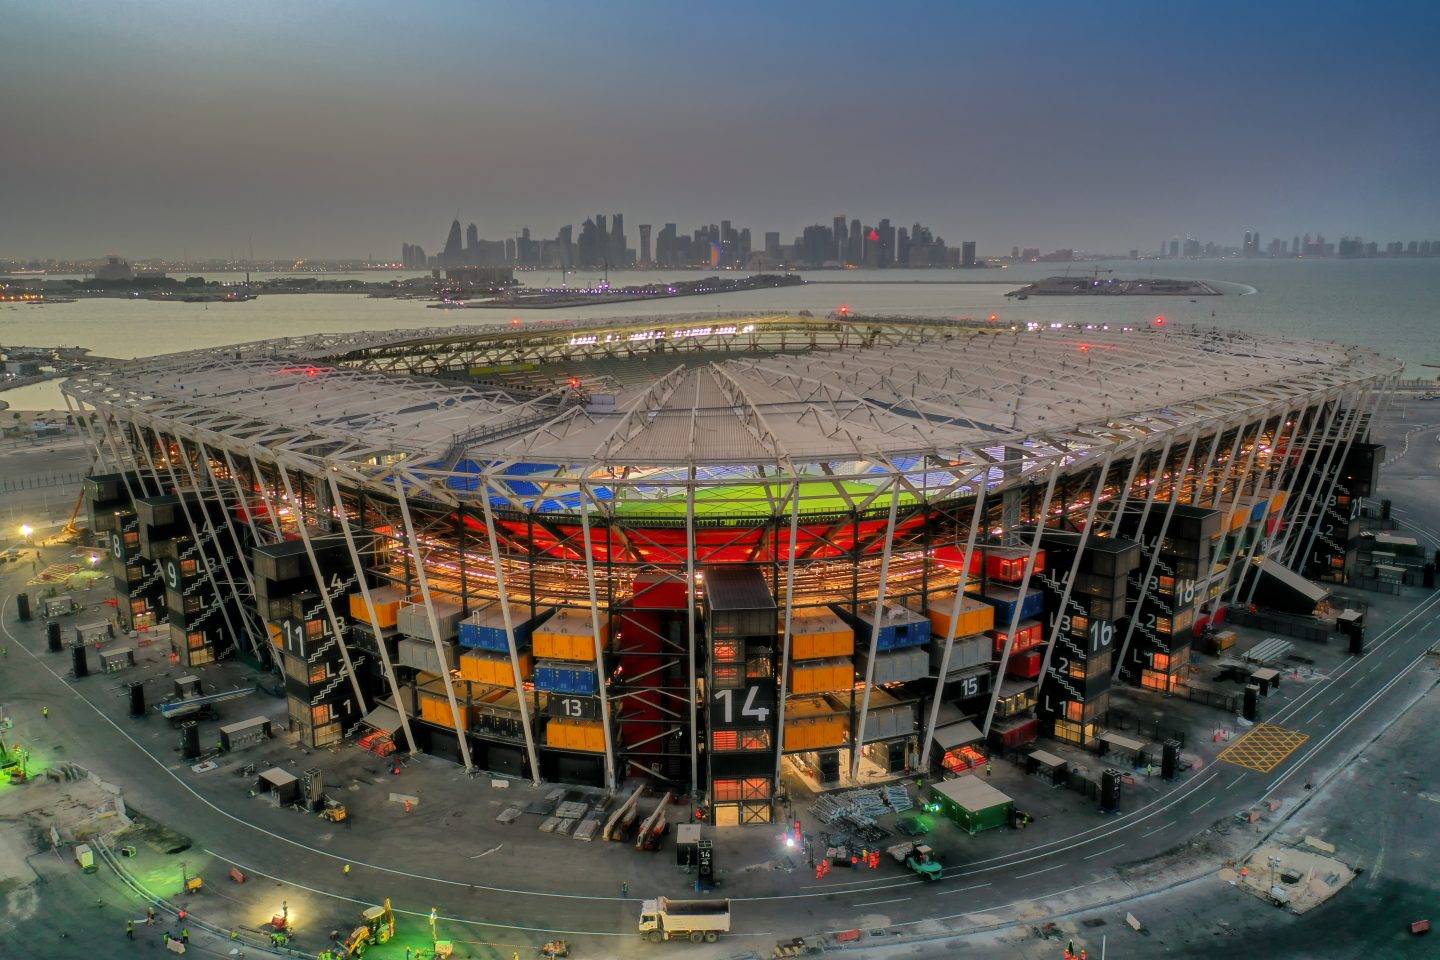 Стадион 974, Доха, Катар
Световно първенство по футбол в Катар 2022